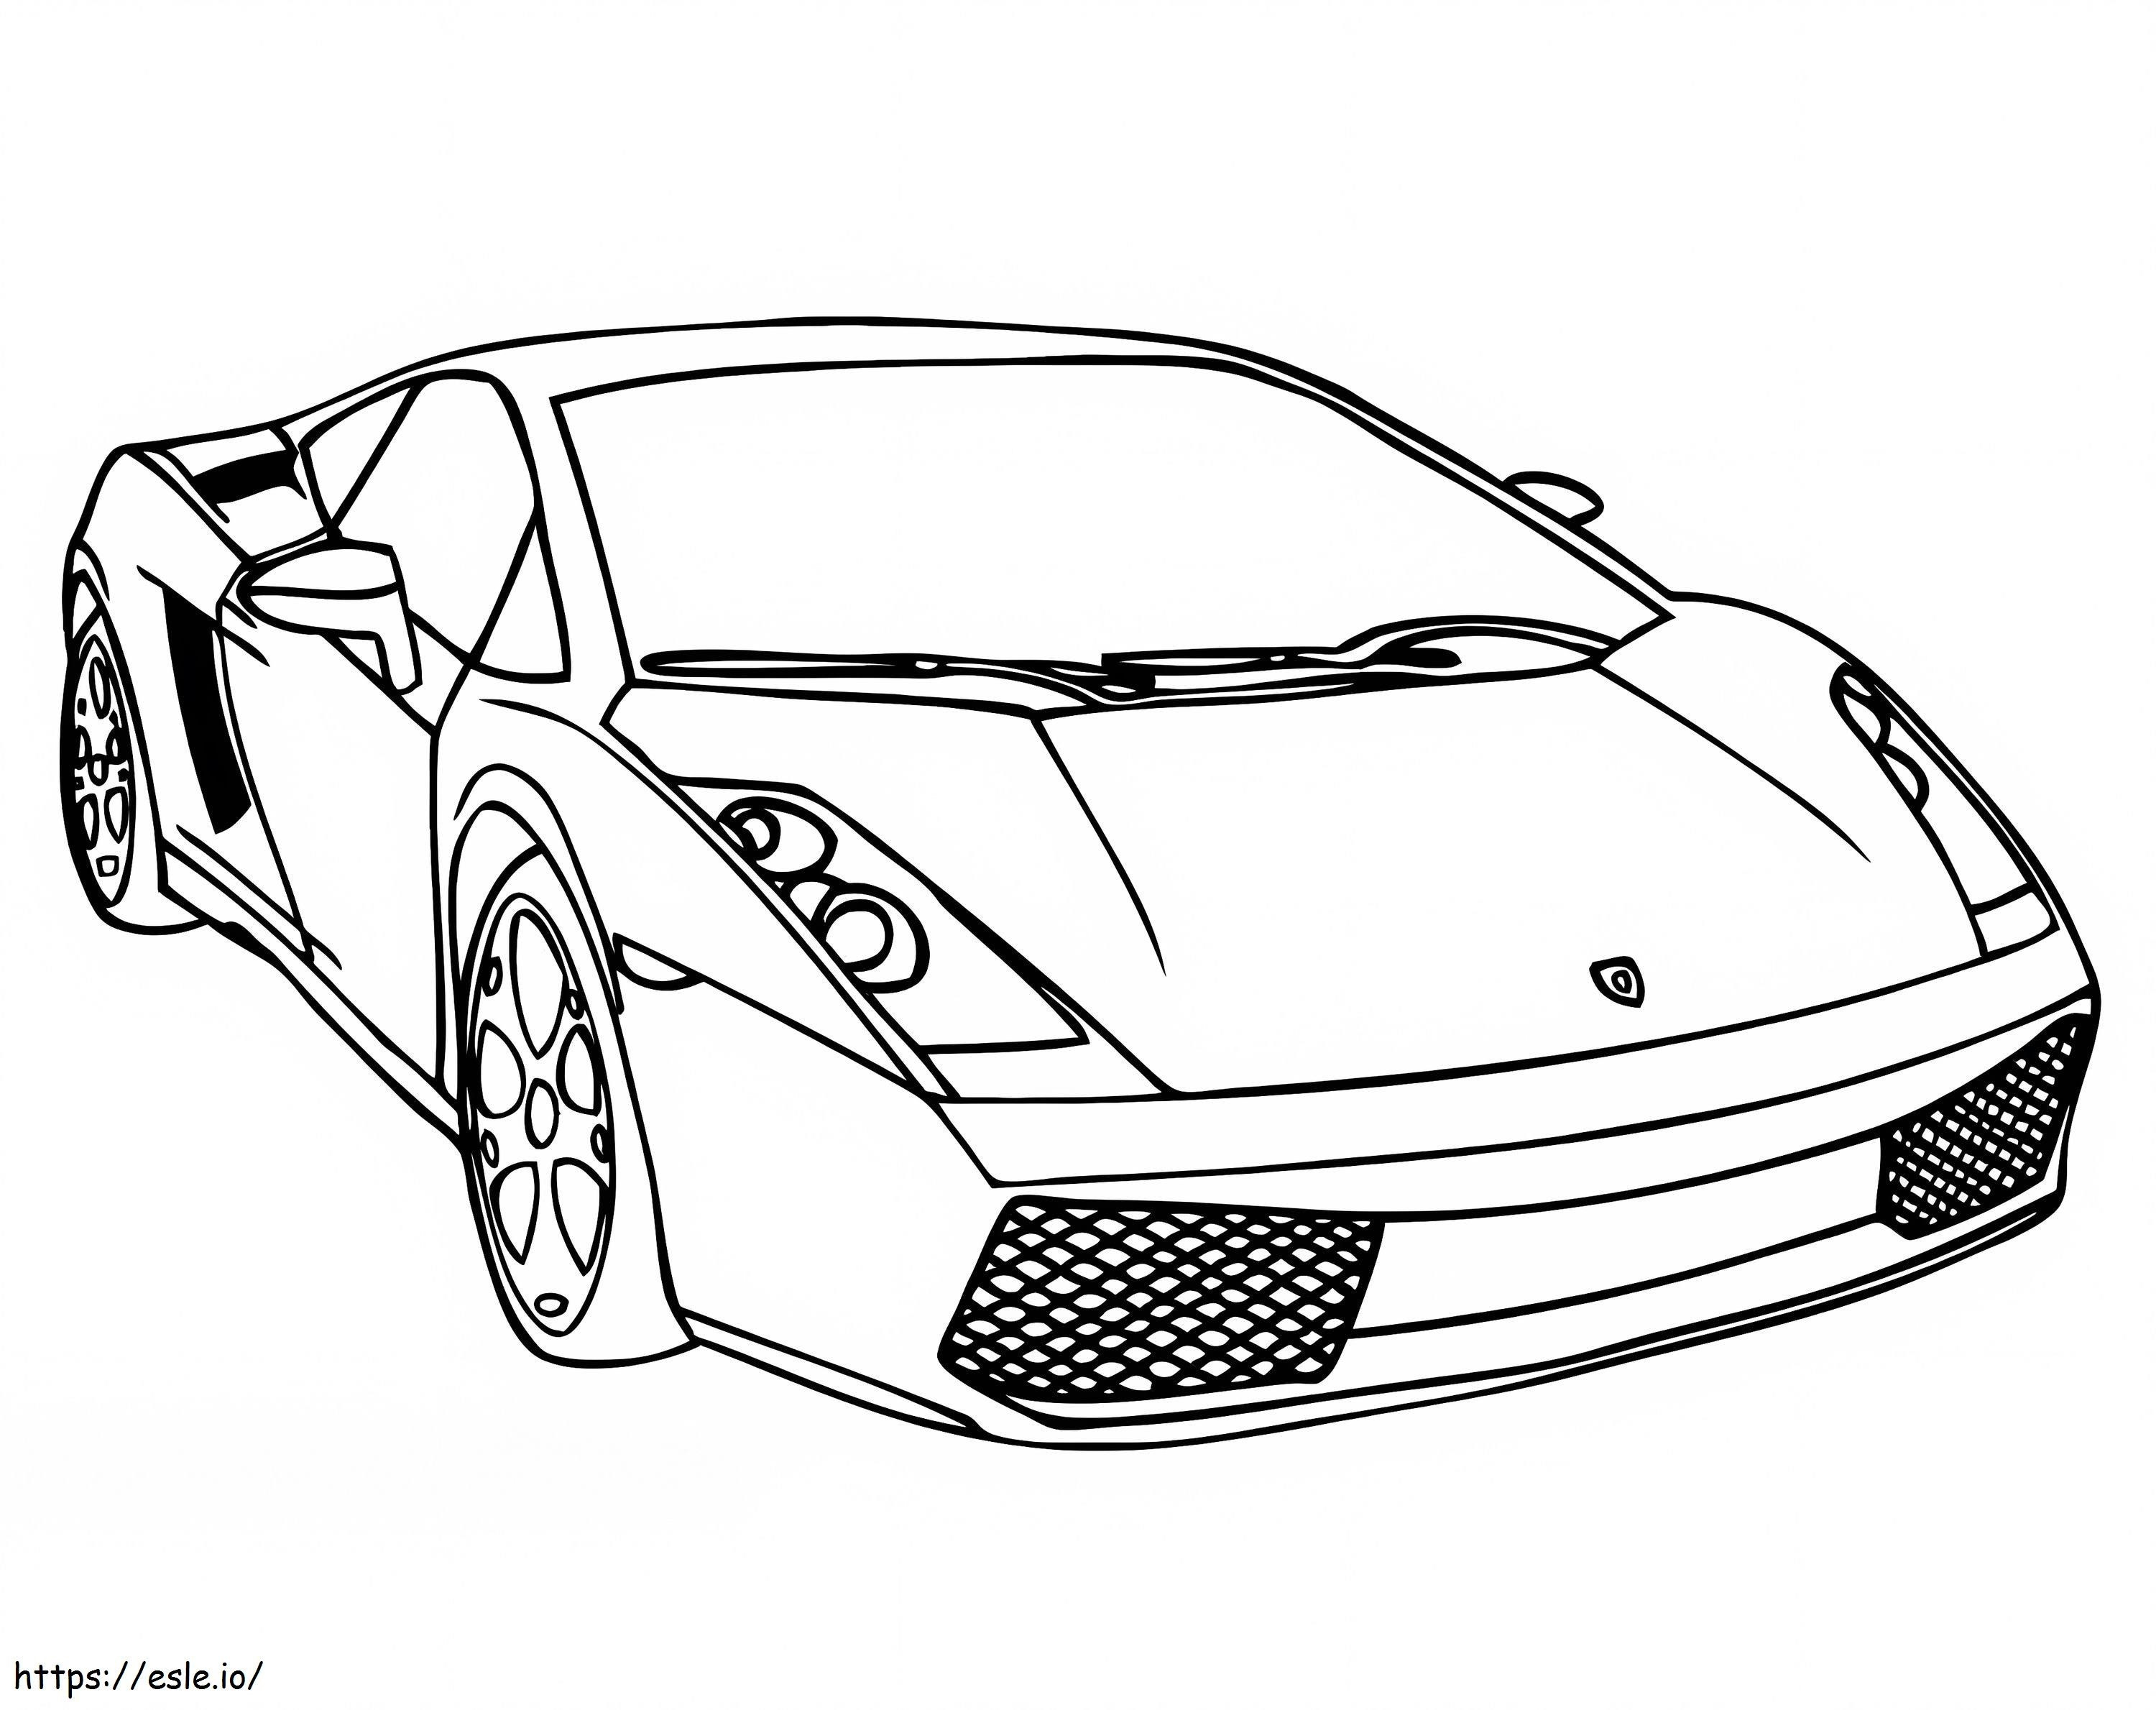 Lamborghini6 kleurplaat kleurplaat